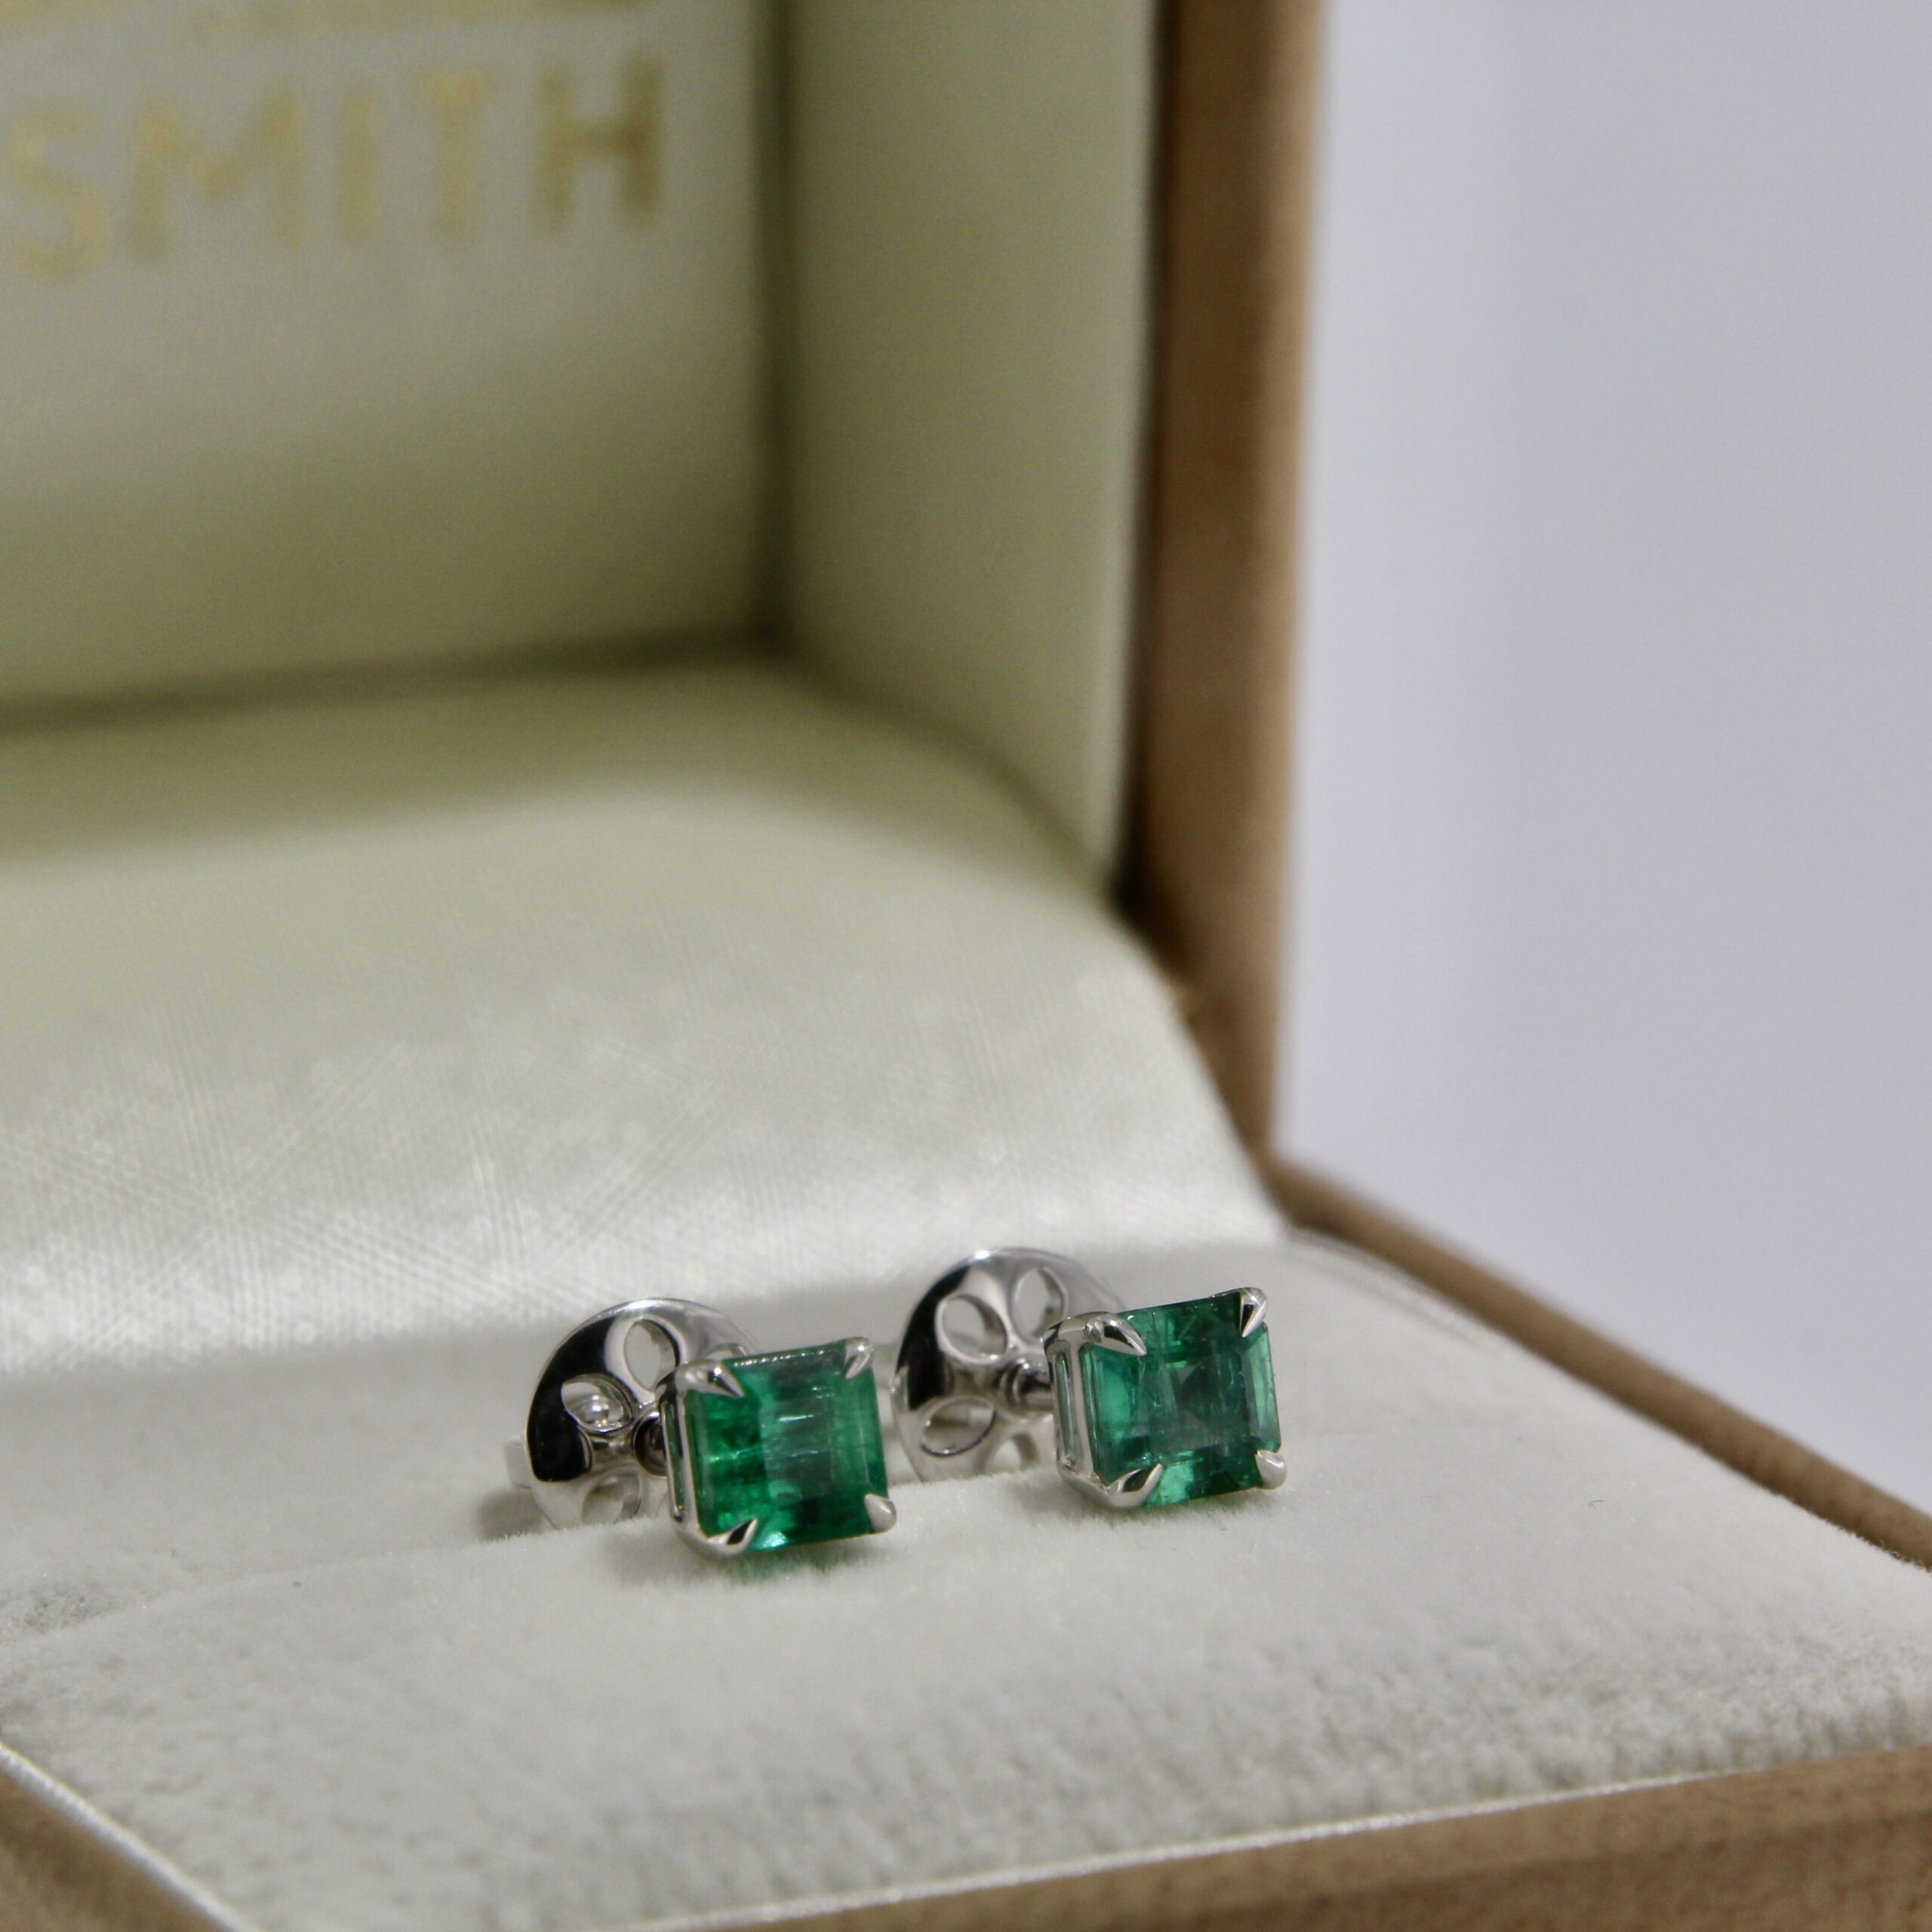 Zambian Emerald Stud Earrings